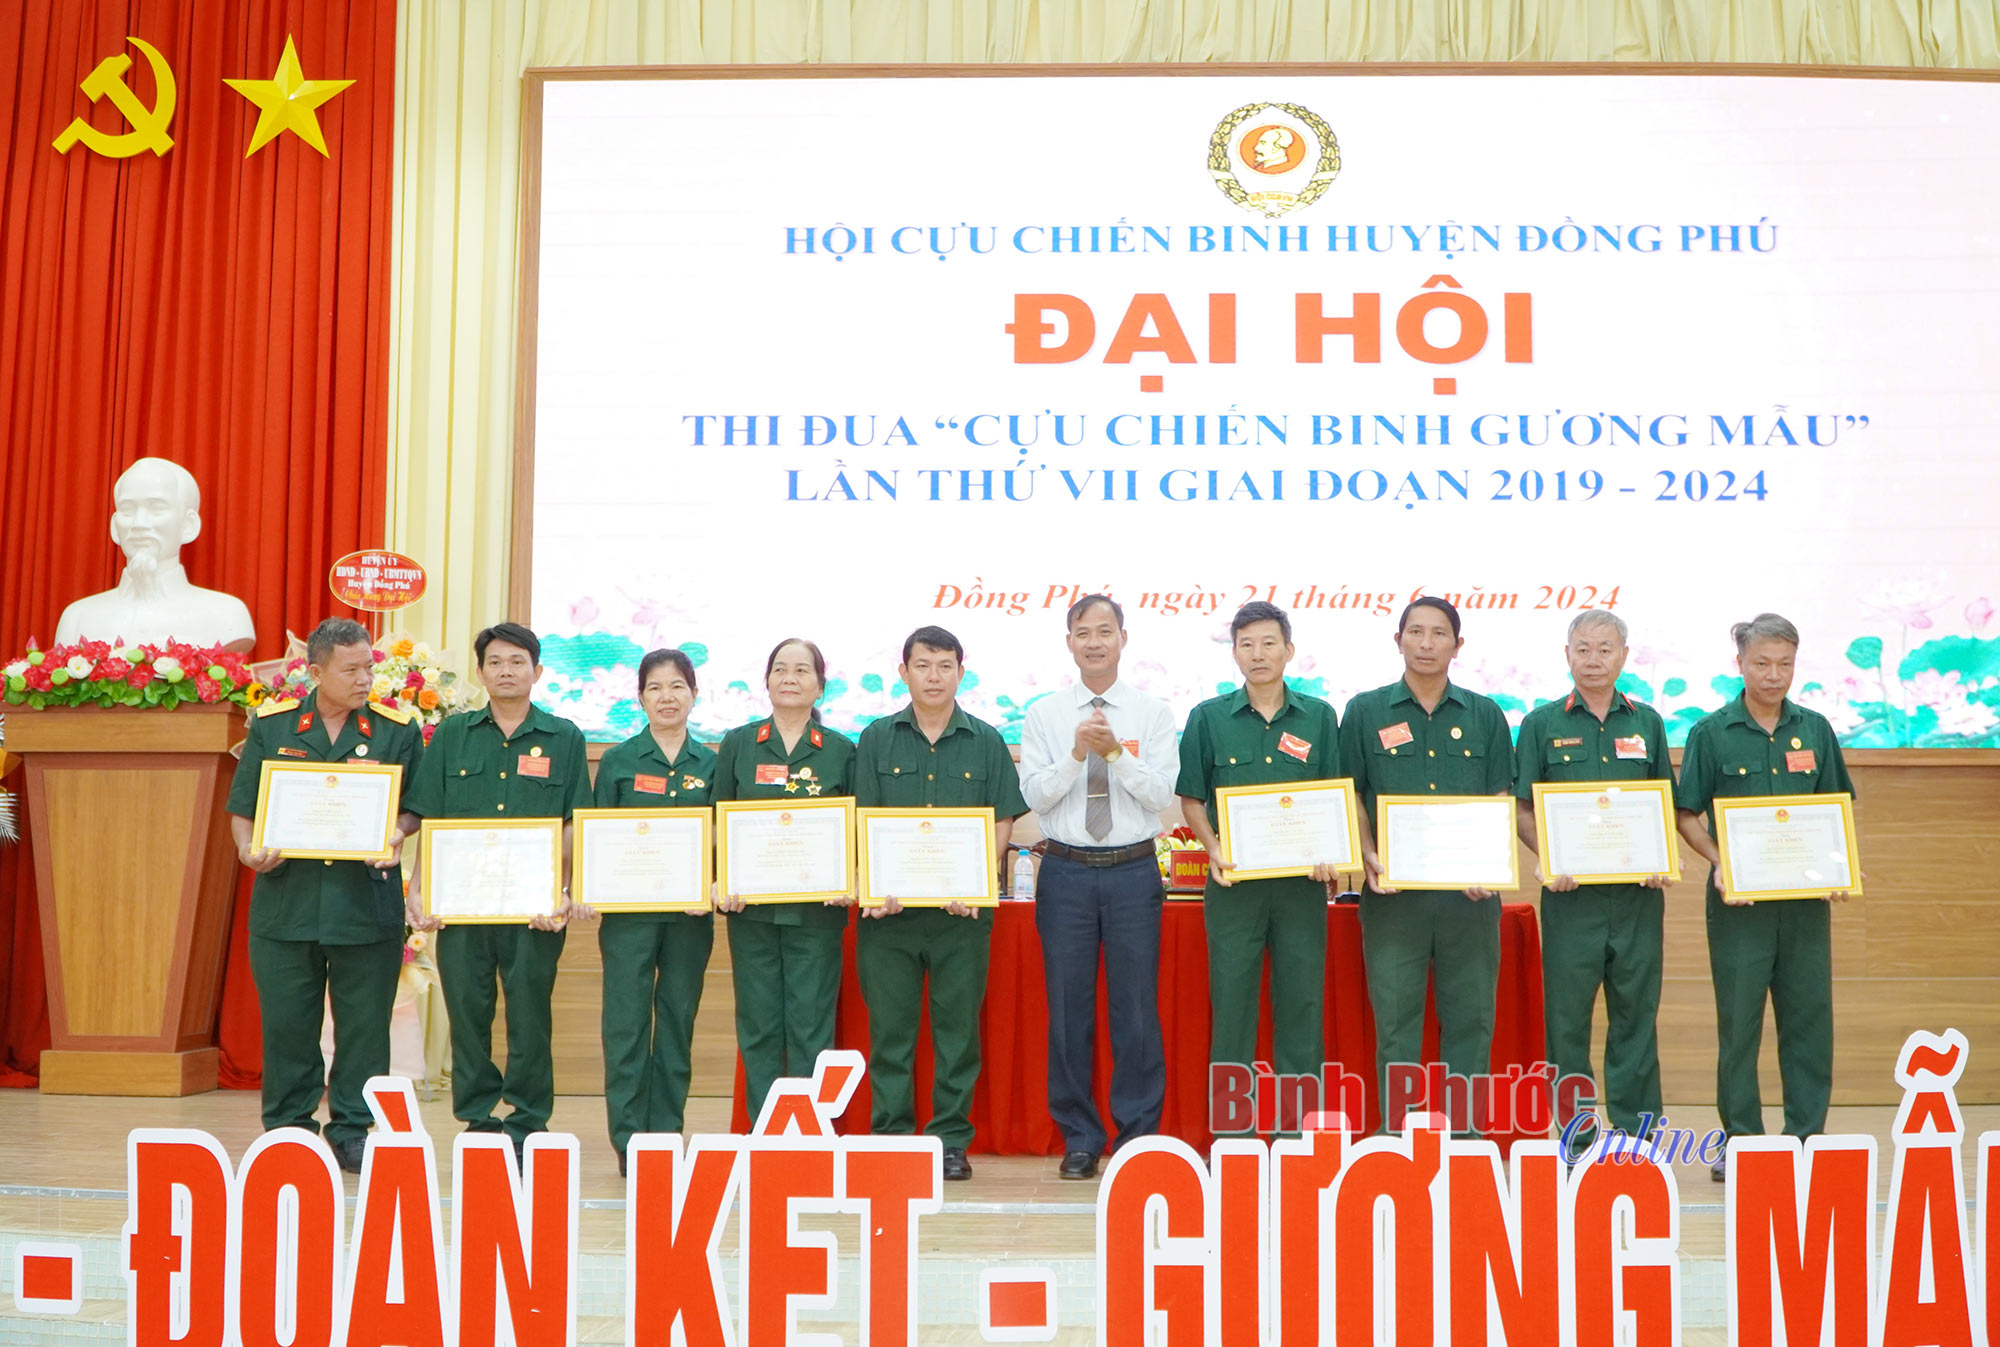 Đồng Phú tổ chức thành công Đại hội thi đua “Cựu chiến binh gương mẫu” lần thứ VII